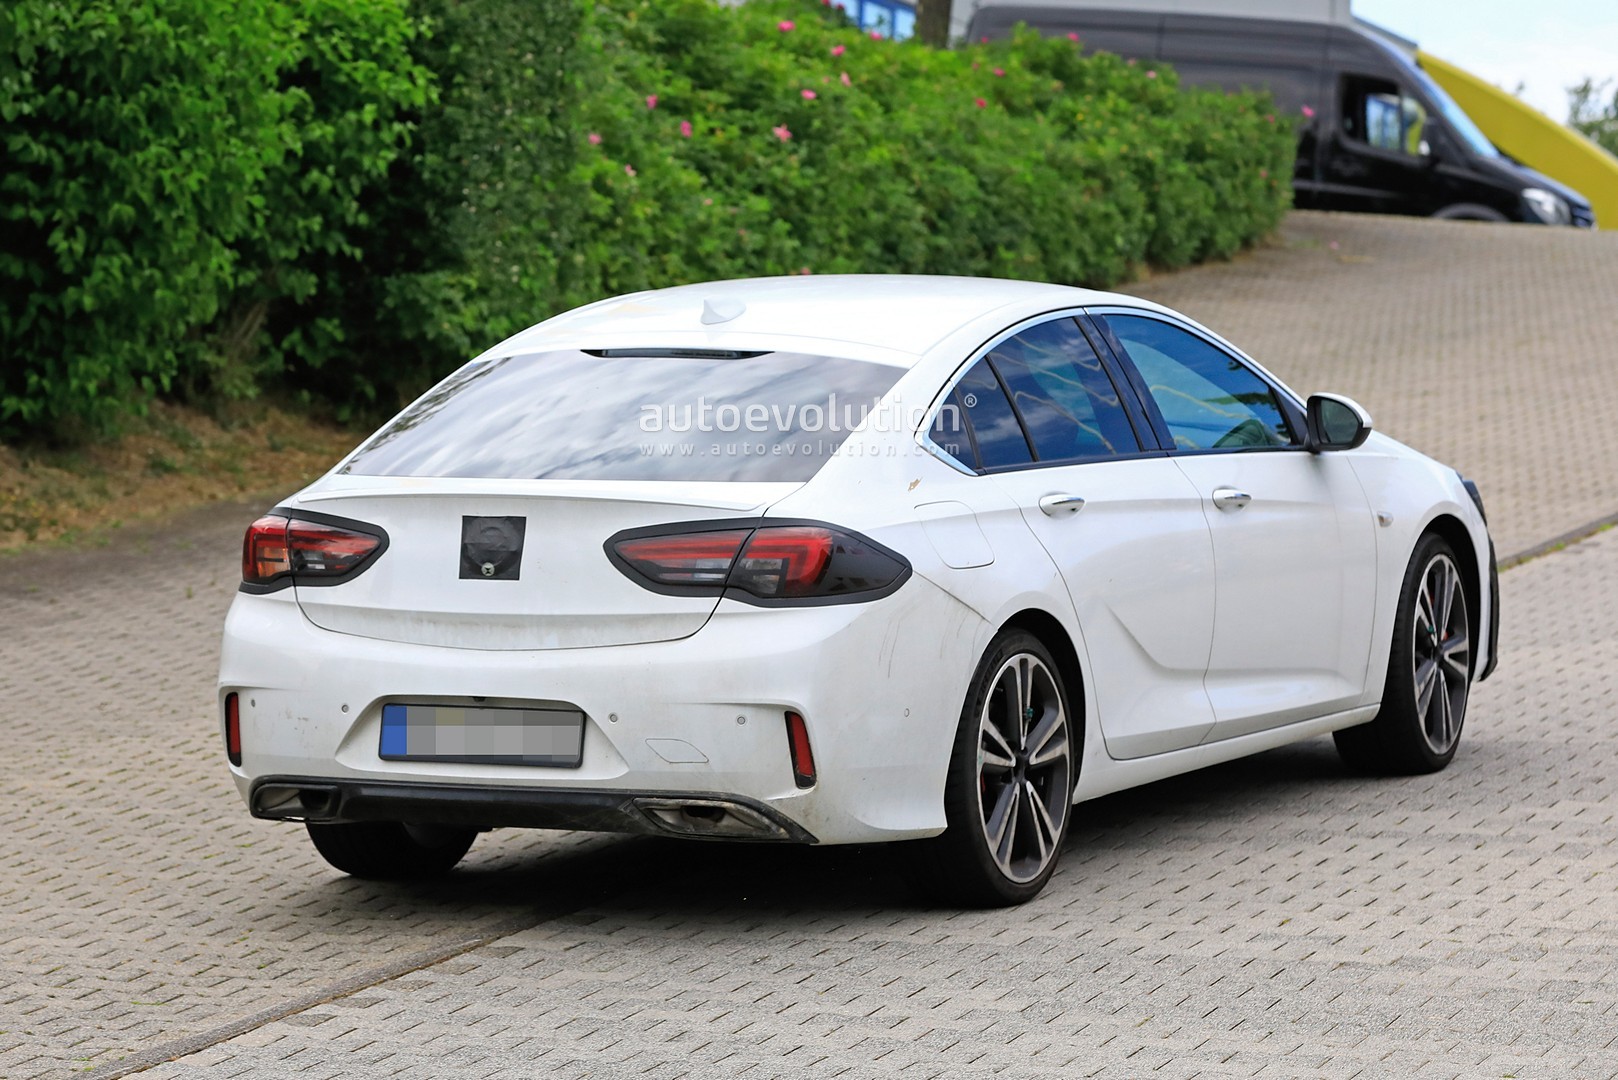 2020 Opel Insignia/2021 Buick regal - BurlappCar